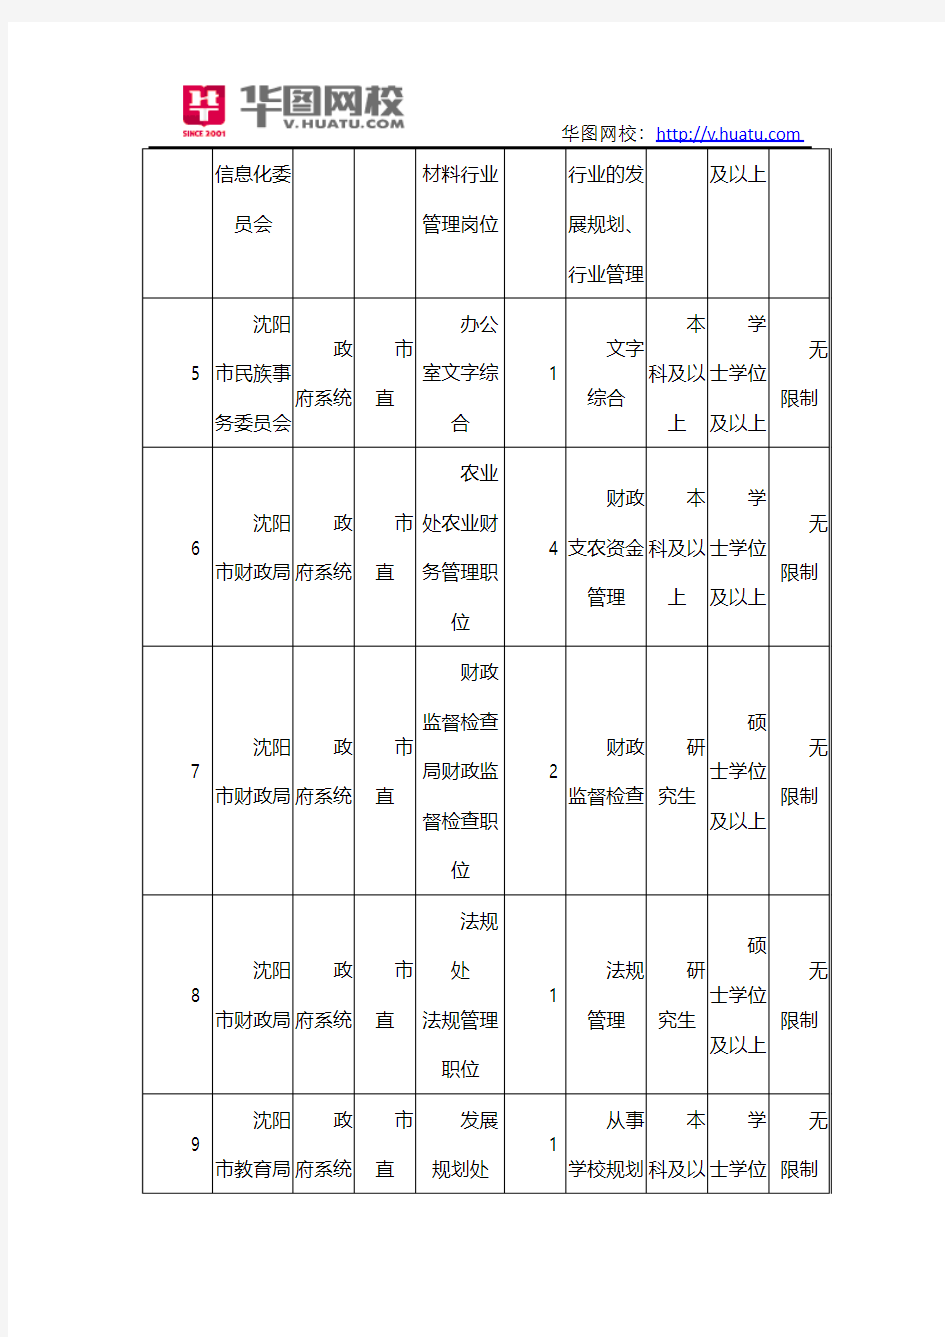 2014年辽宁省公务员考试职位表汇总